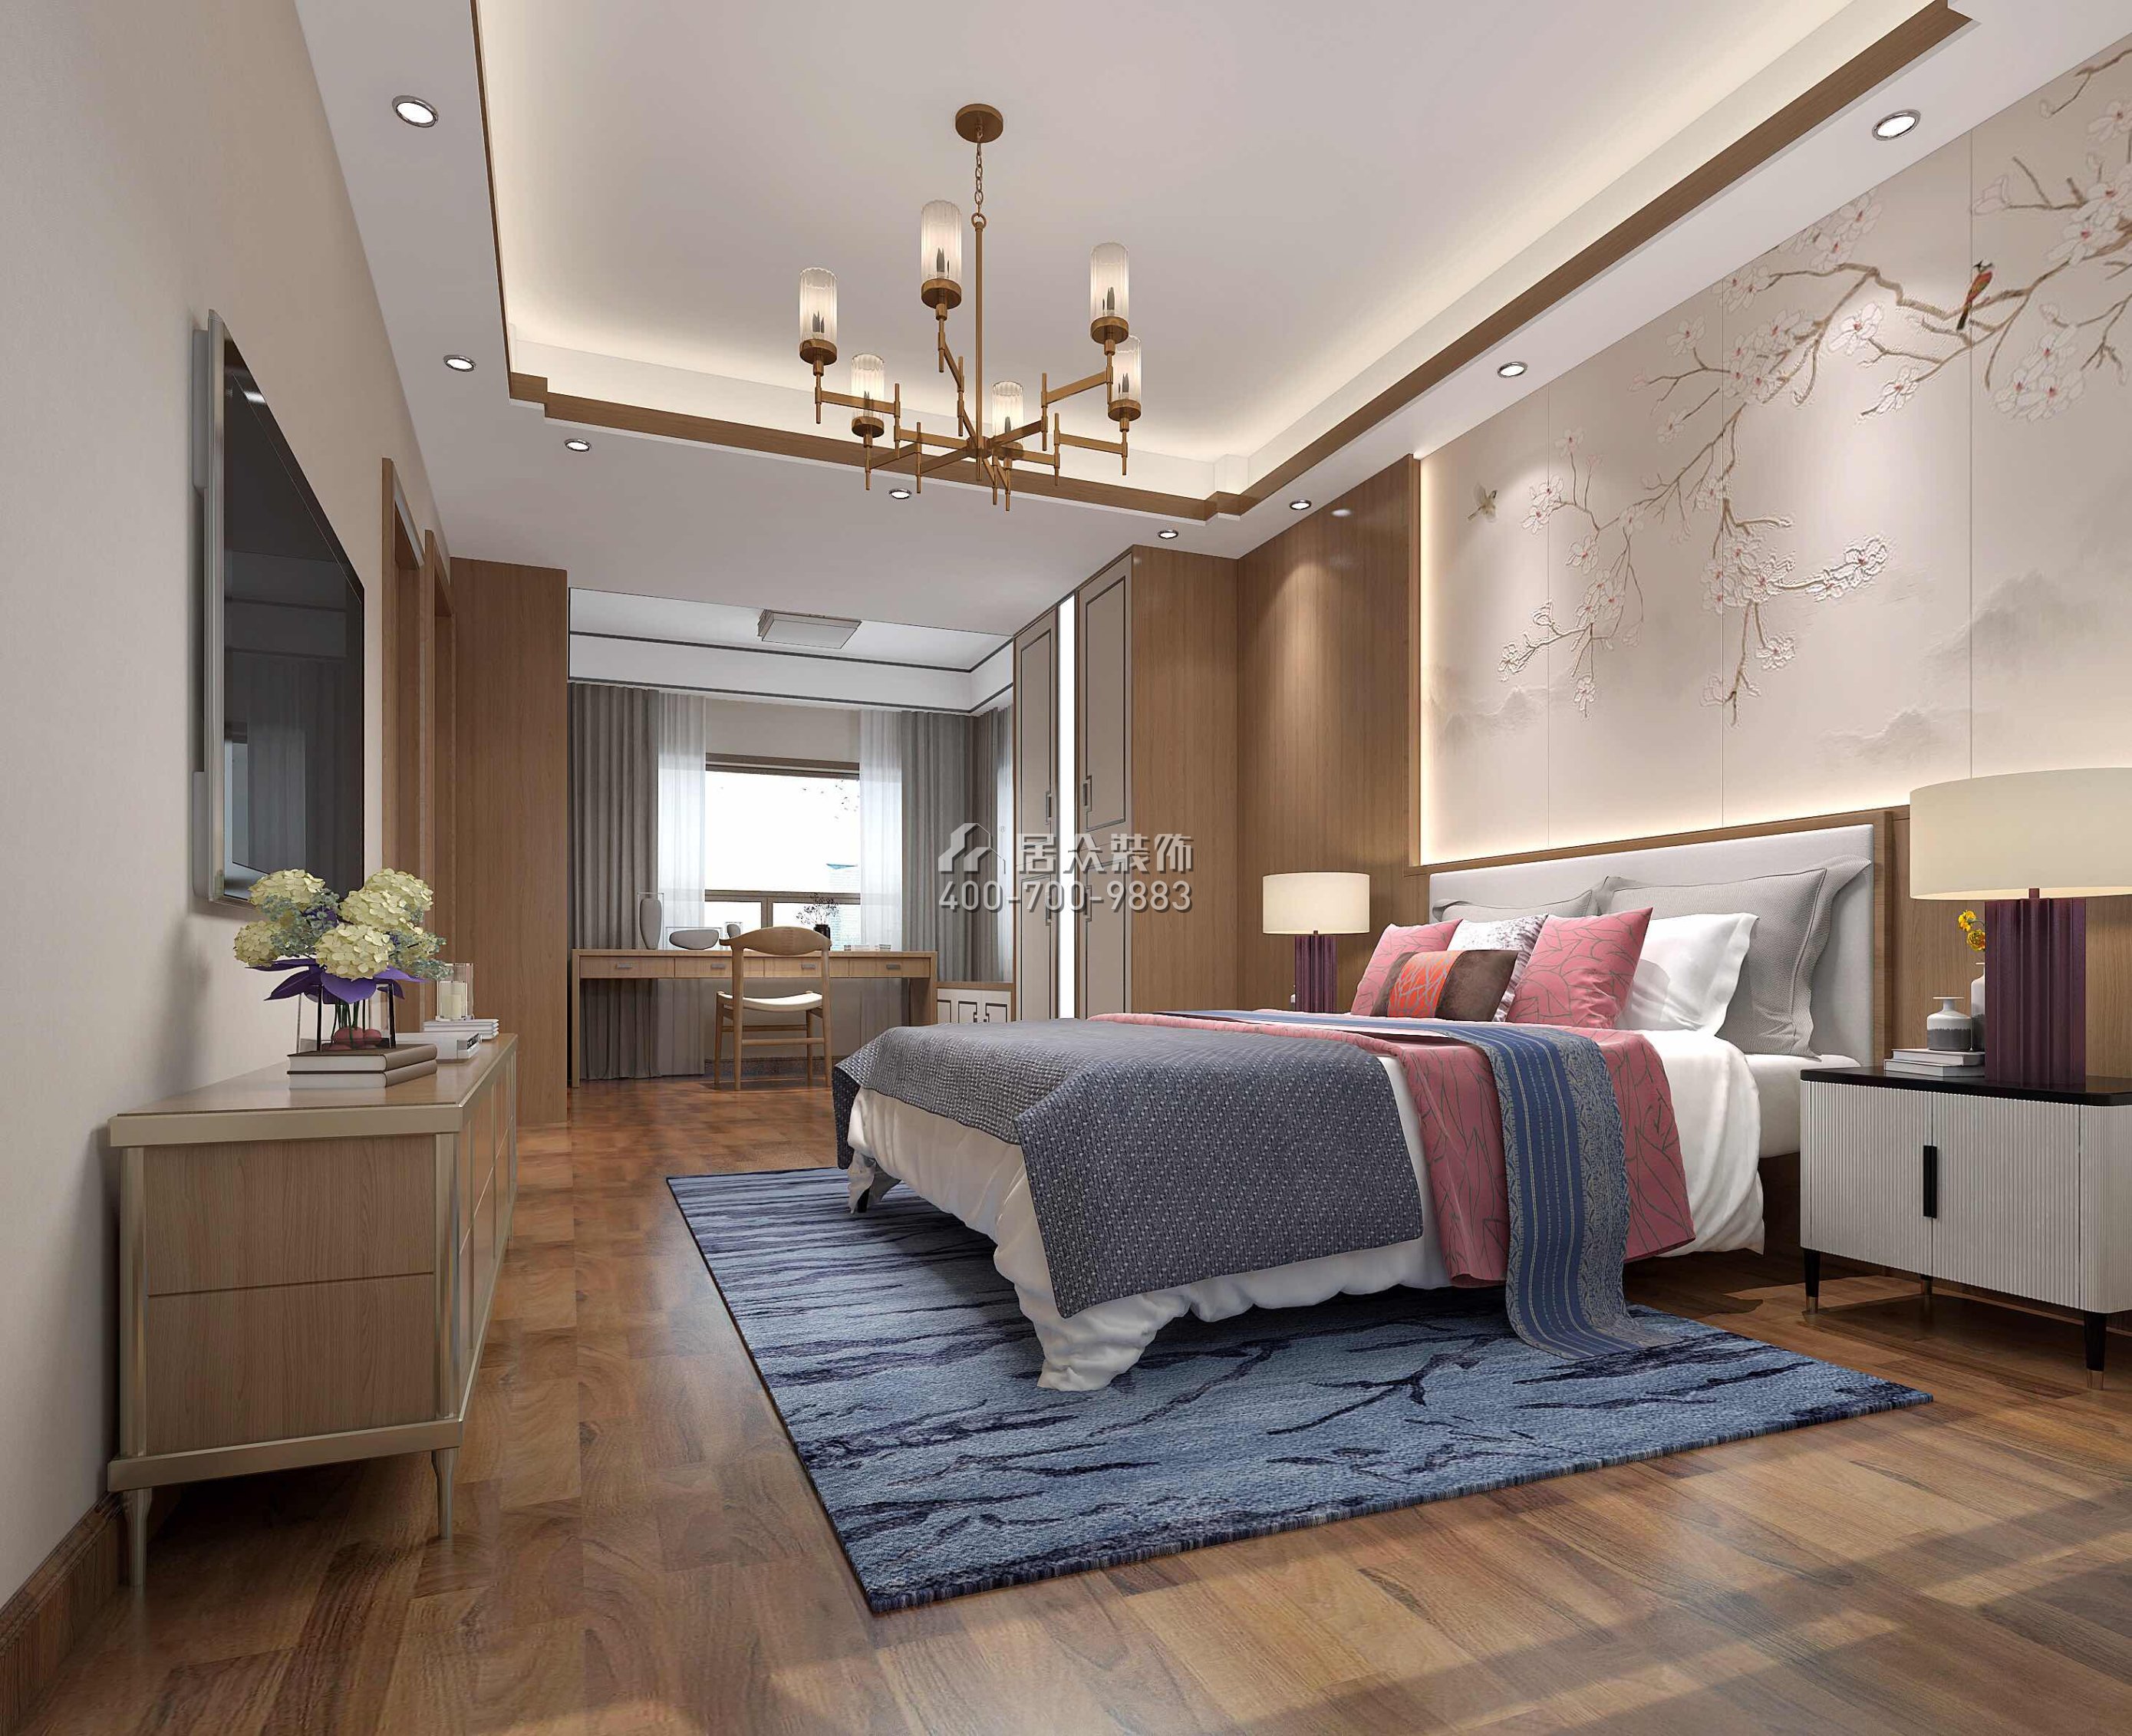 星河丹堤140平方米中式风格平层户型卧室装修效果图